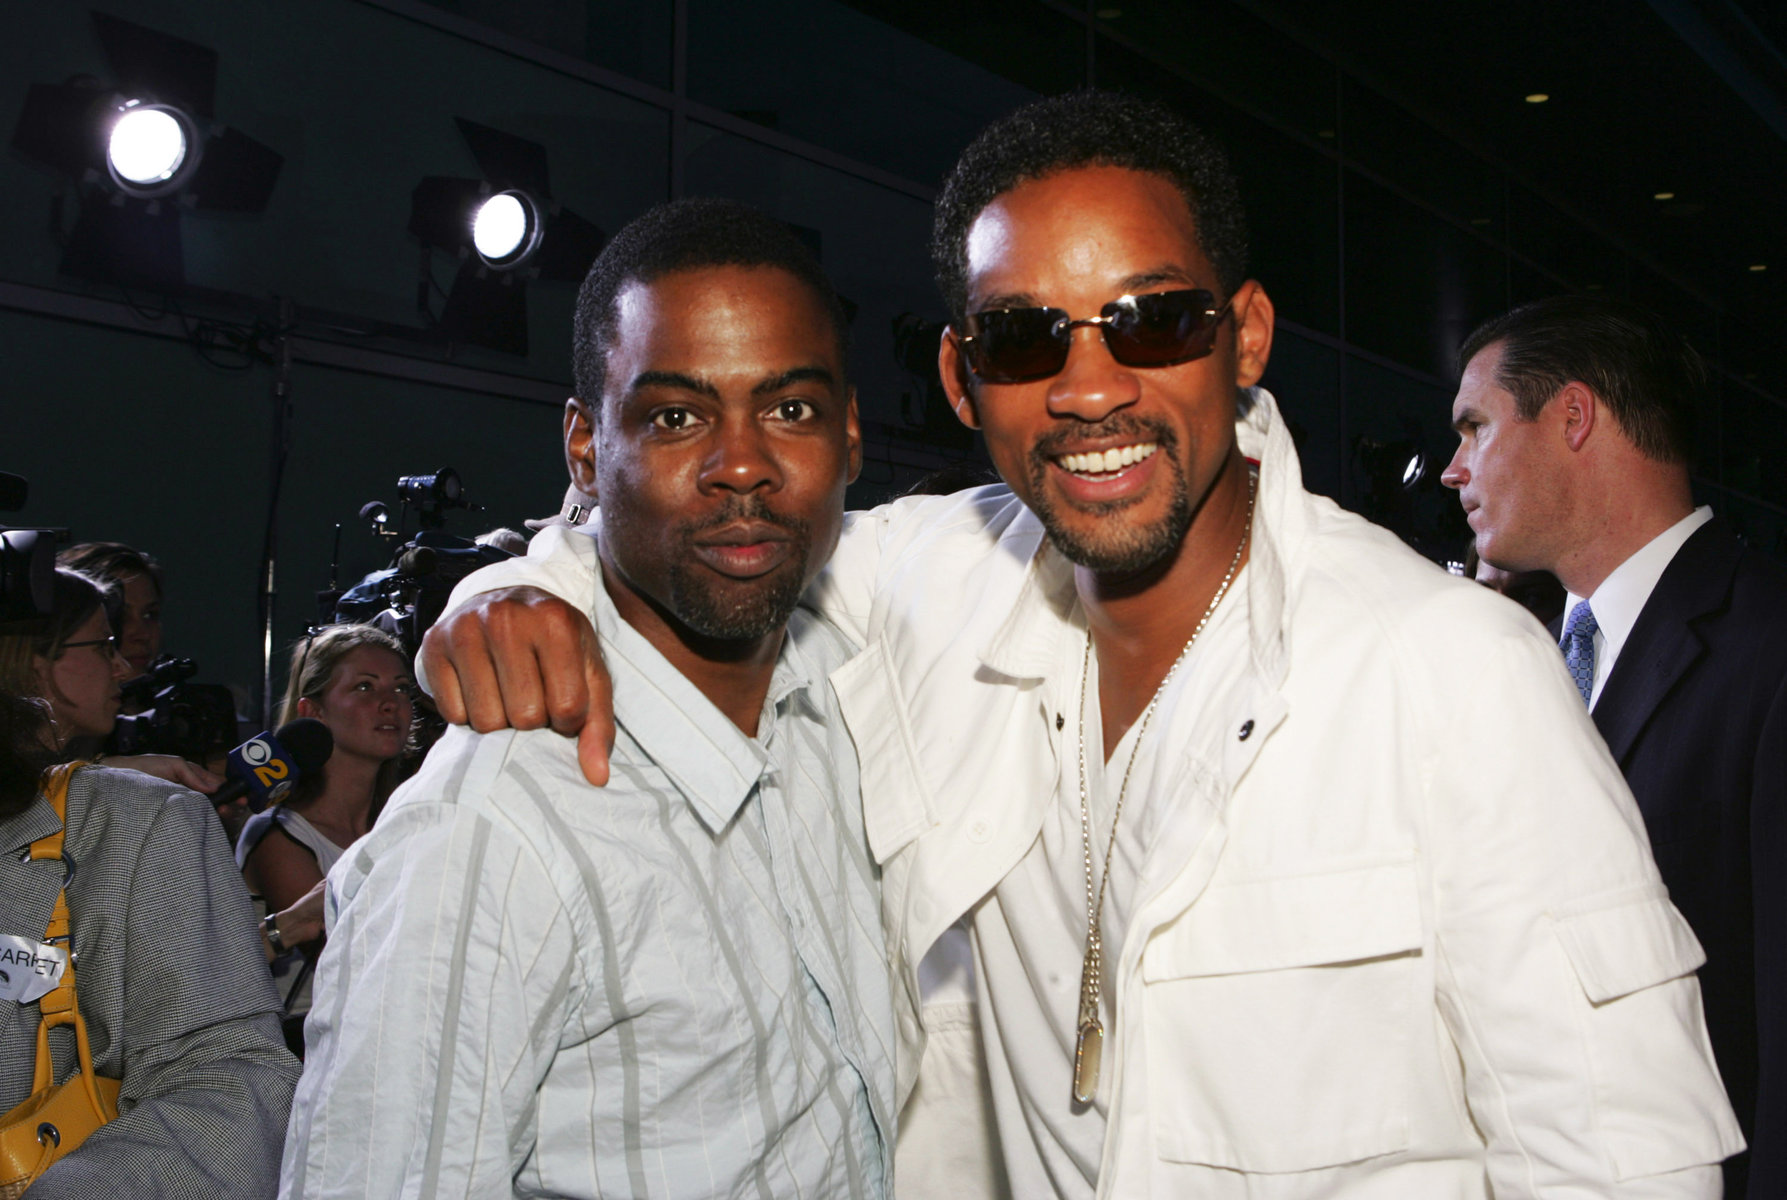 Χαστούκι Will Smith στον Chris Rock: Υπάρχει παρελθόν κόντρας μεταξύ των δύο πρώην φίλων